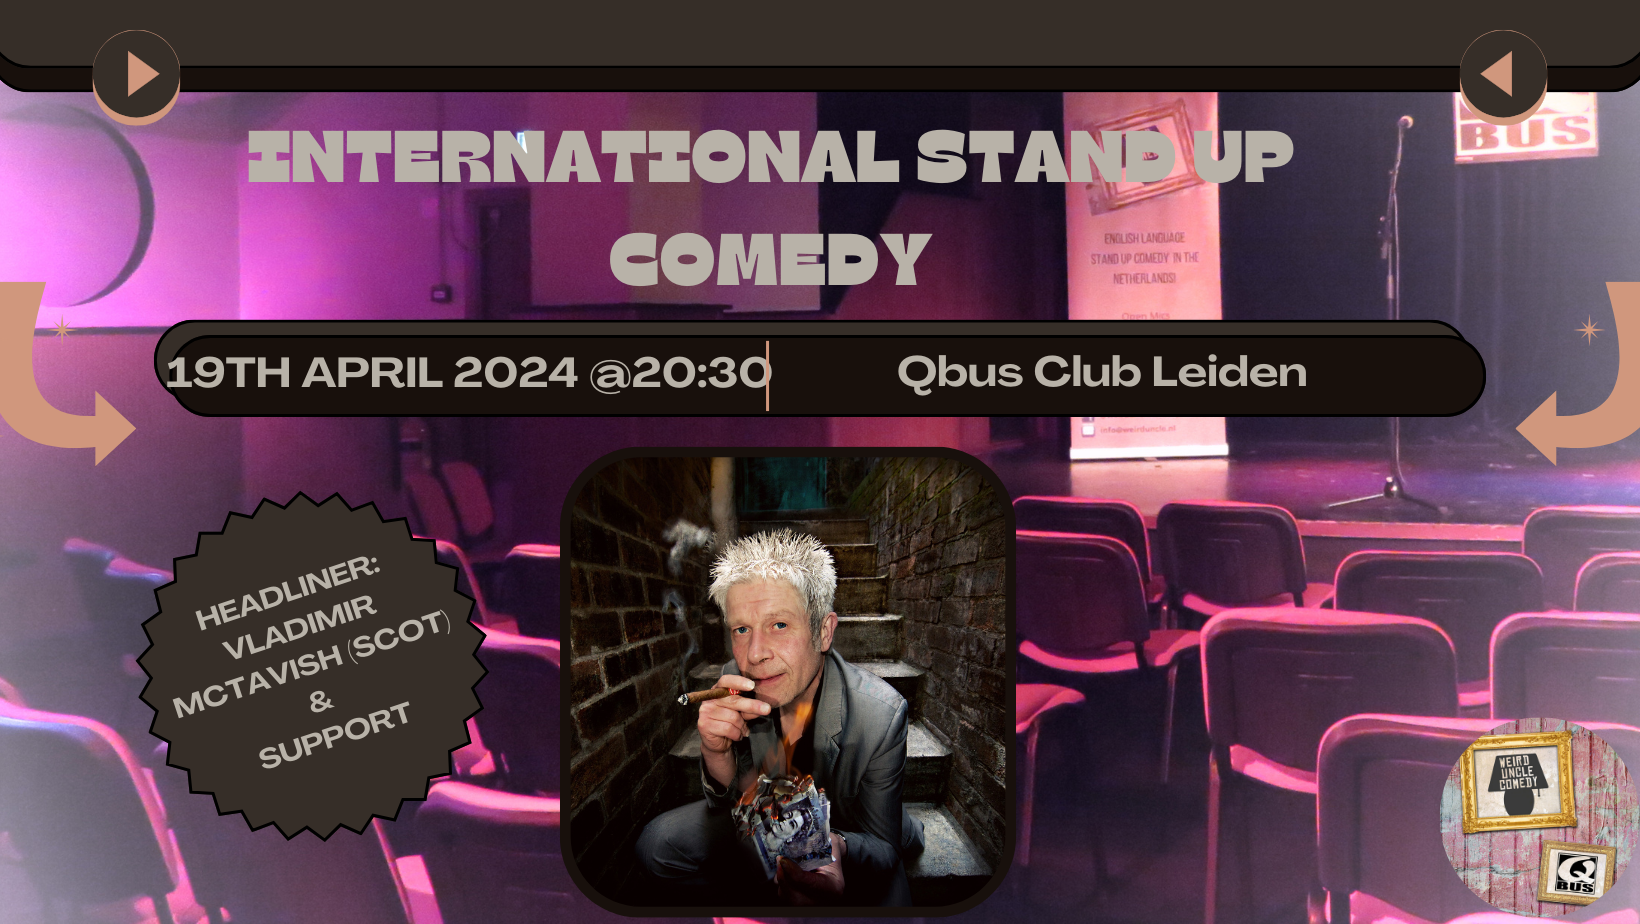 Ticket kopen voor evenement International Stand Up Comedy  H/L Vladimir McTavish (SCO) & Support